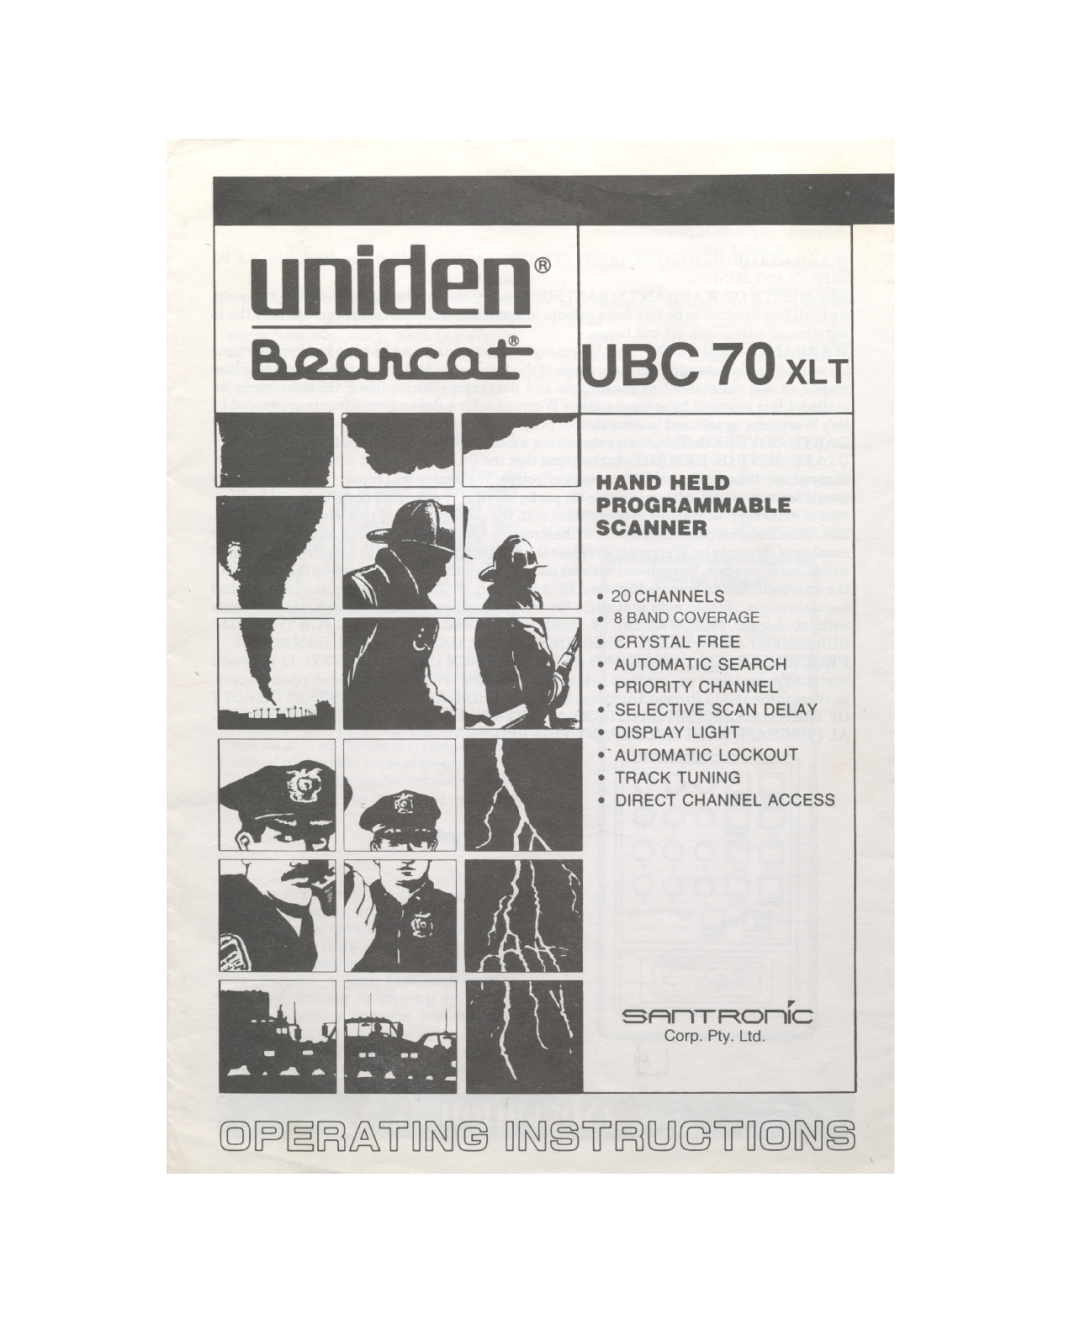 Uniden UBC 70XLT manual Q~~~~ lfDU\D@DU\D~lf~UJglfDQU\D~, uniden@, Hand Held, Programmable, Scanner 